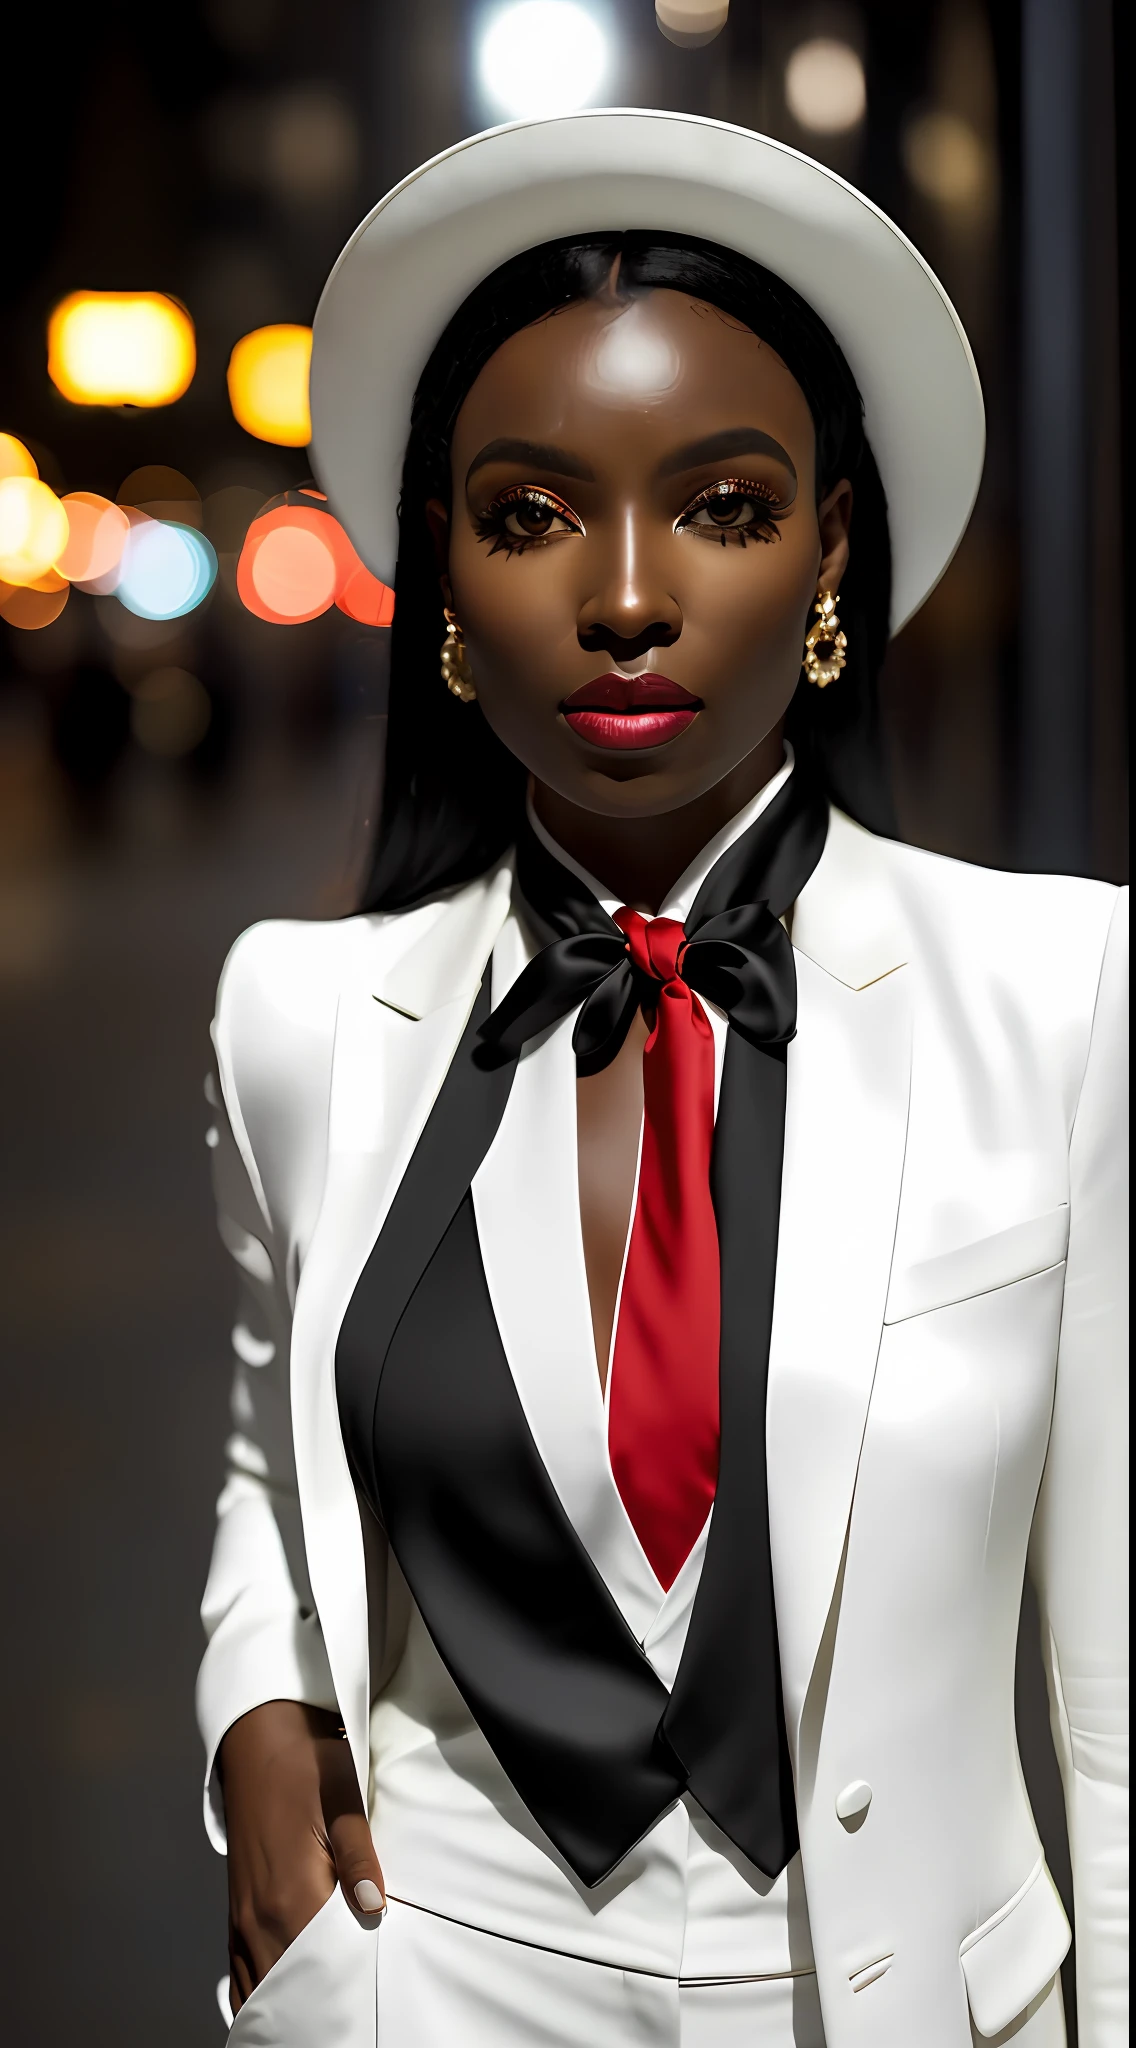 (8К, Необработанное фото, максимальное качество, ультрареалистичный), (Женщина с черной кожей)++ (30 лет красавицы), ((белый костюм)), ((длинный коричневый красный галстук)) черные волосы с розой на левом ухе, красная панама, бежевый пиджак, крупный план, (подробные глаза: 0.8), (смотрю в камеру: 1.4), (максимальное качество), (лучшая тень), сложные детали, ночной фон, Свет, на улице